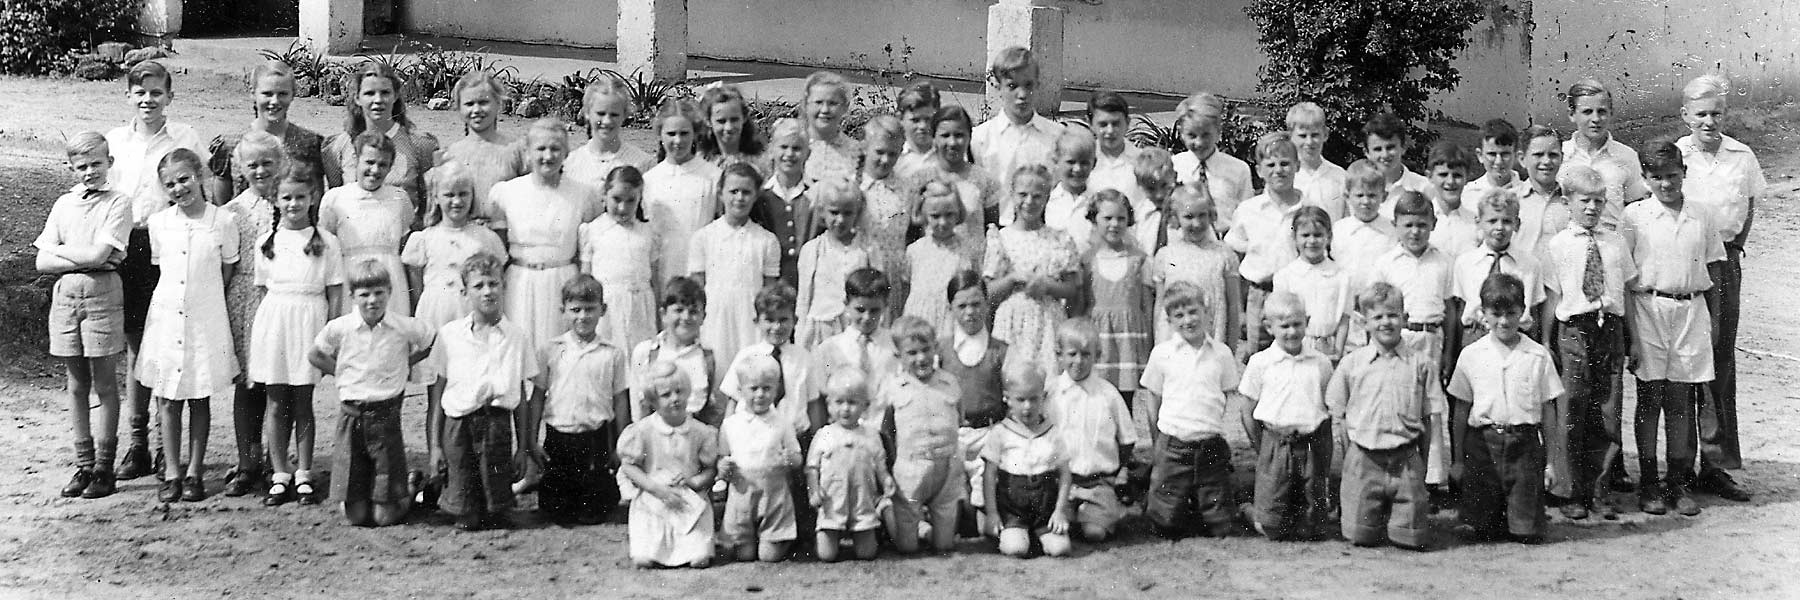 1949 School Photo